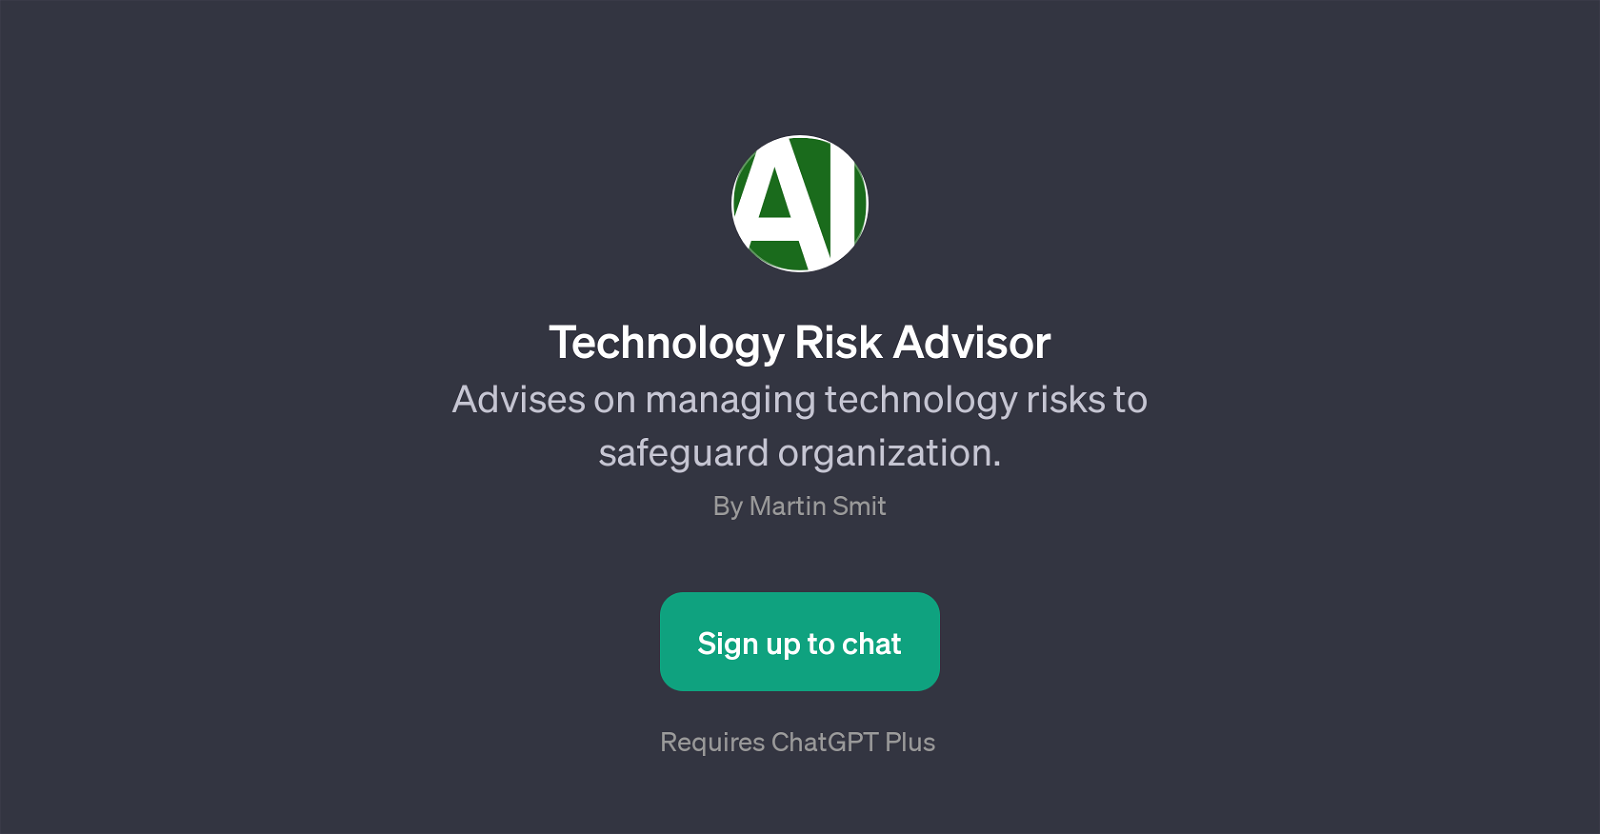 Technology Risk Advisor website